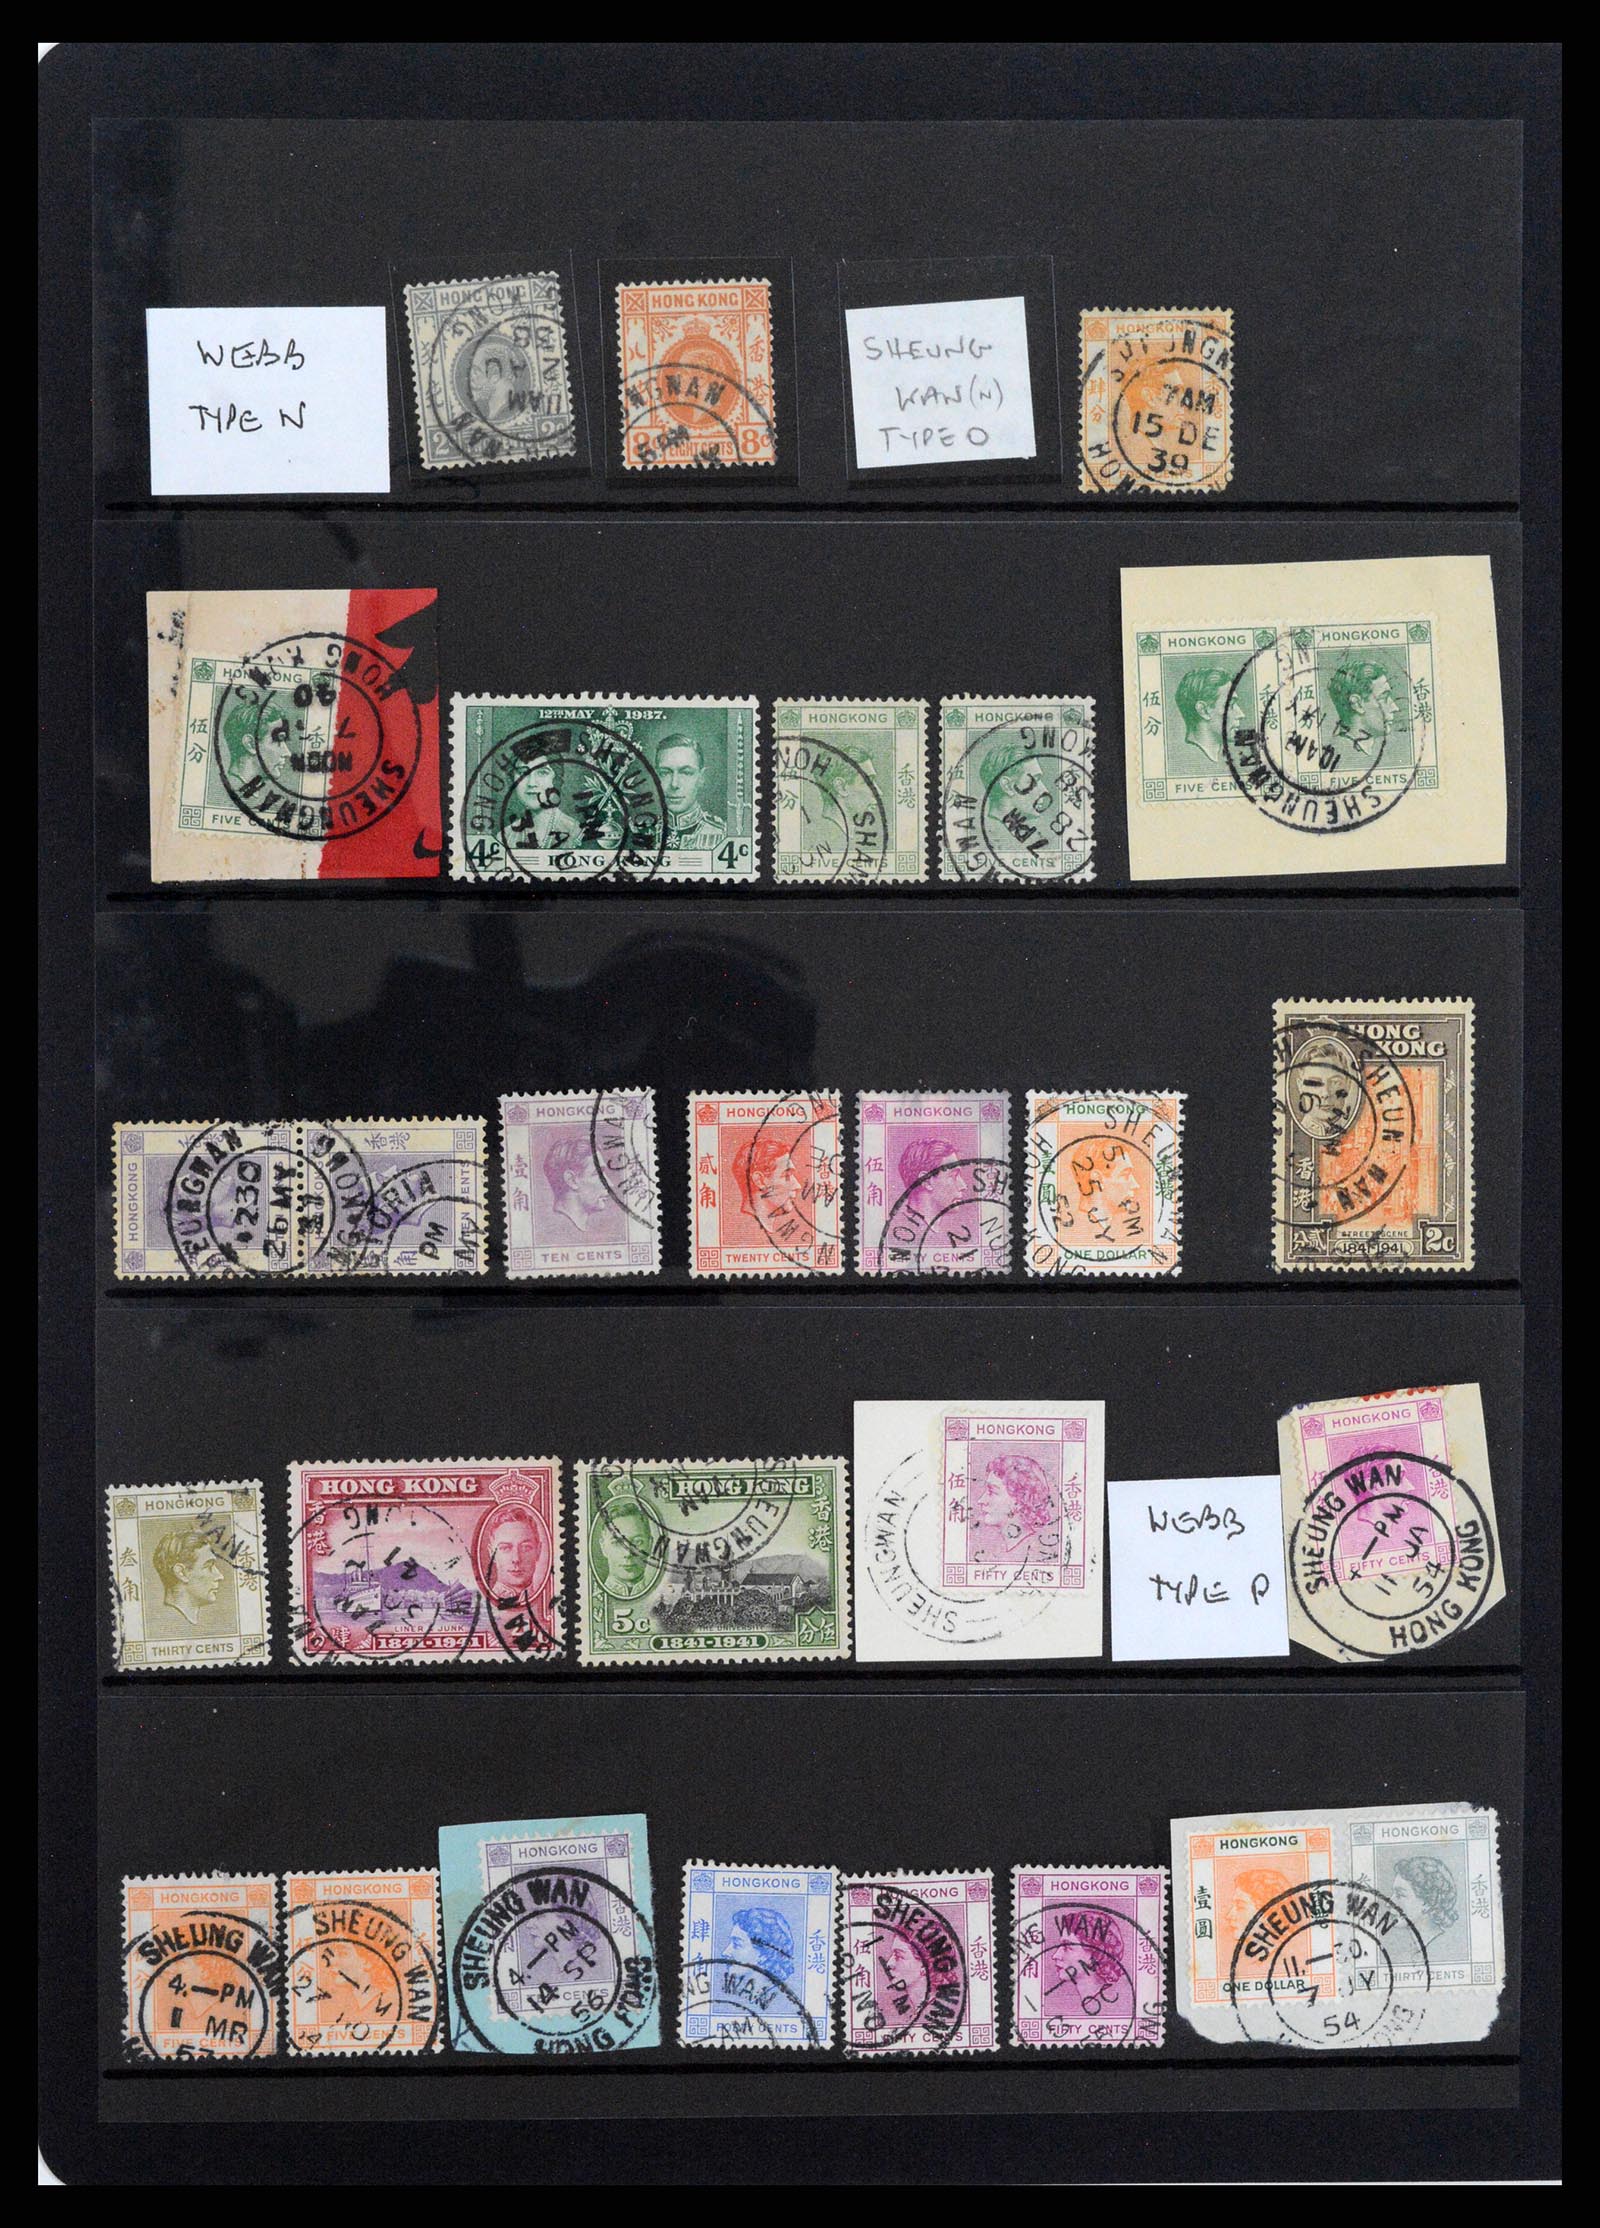 37358 057 - Stamp collection 37358 Hong Kong 1861-1997.